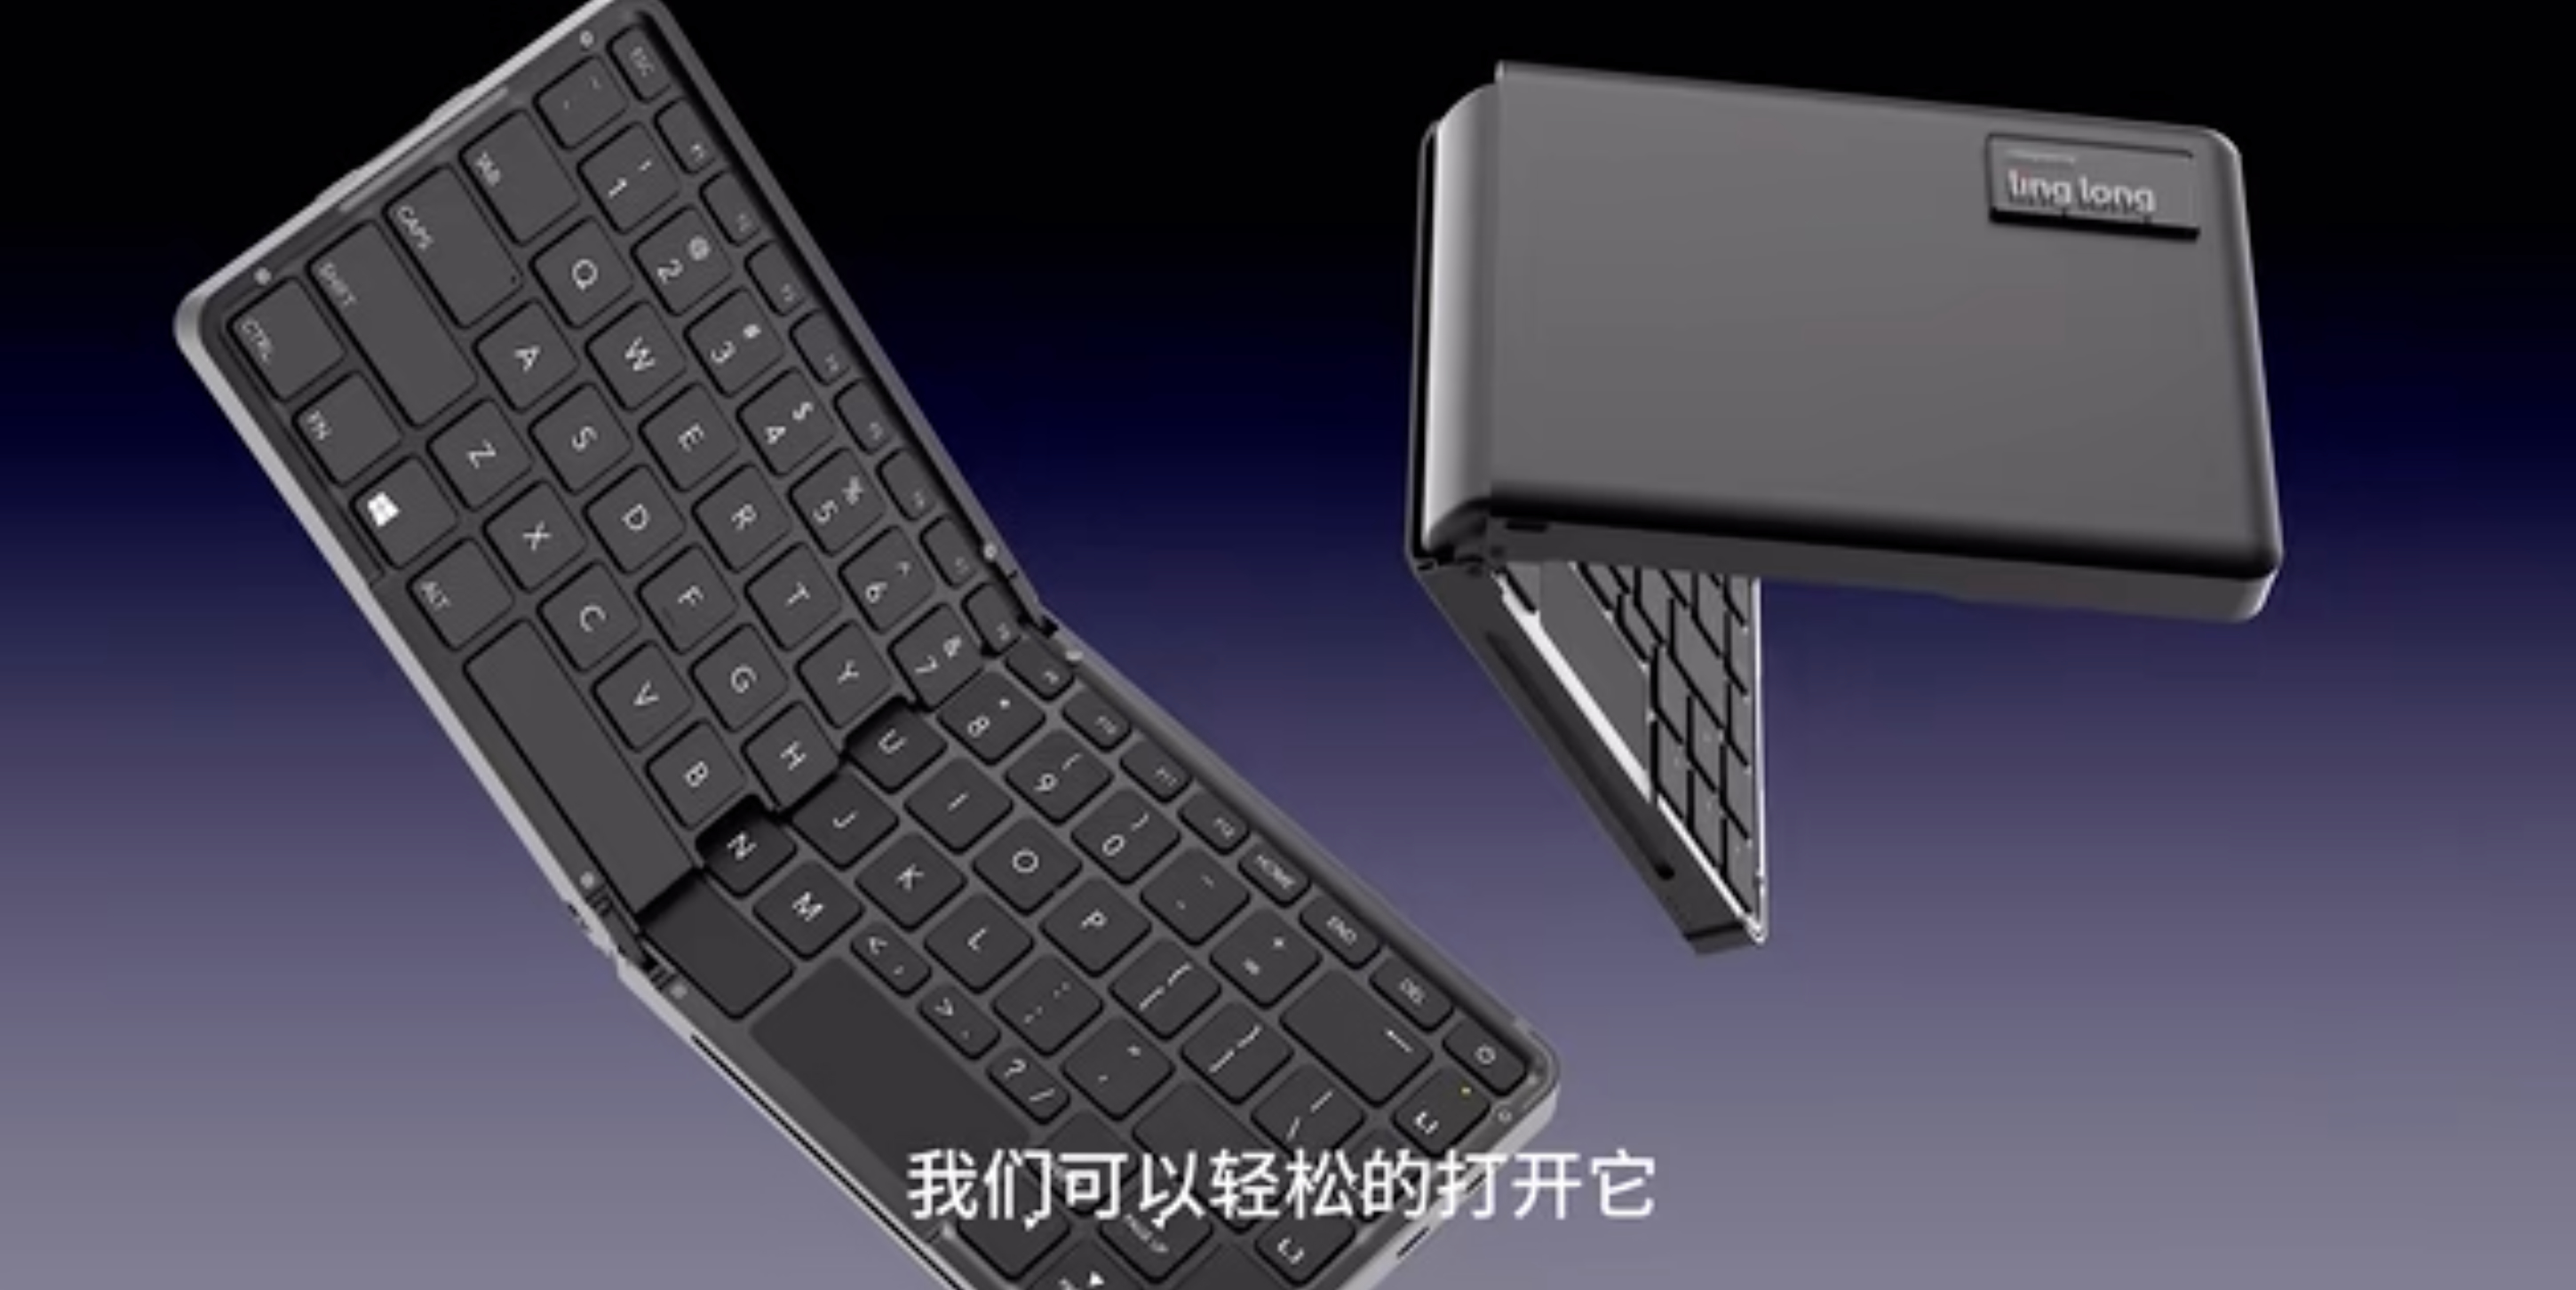 Linglong foldable keyboard PC.